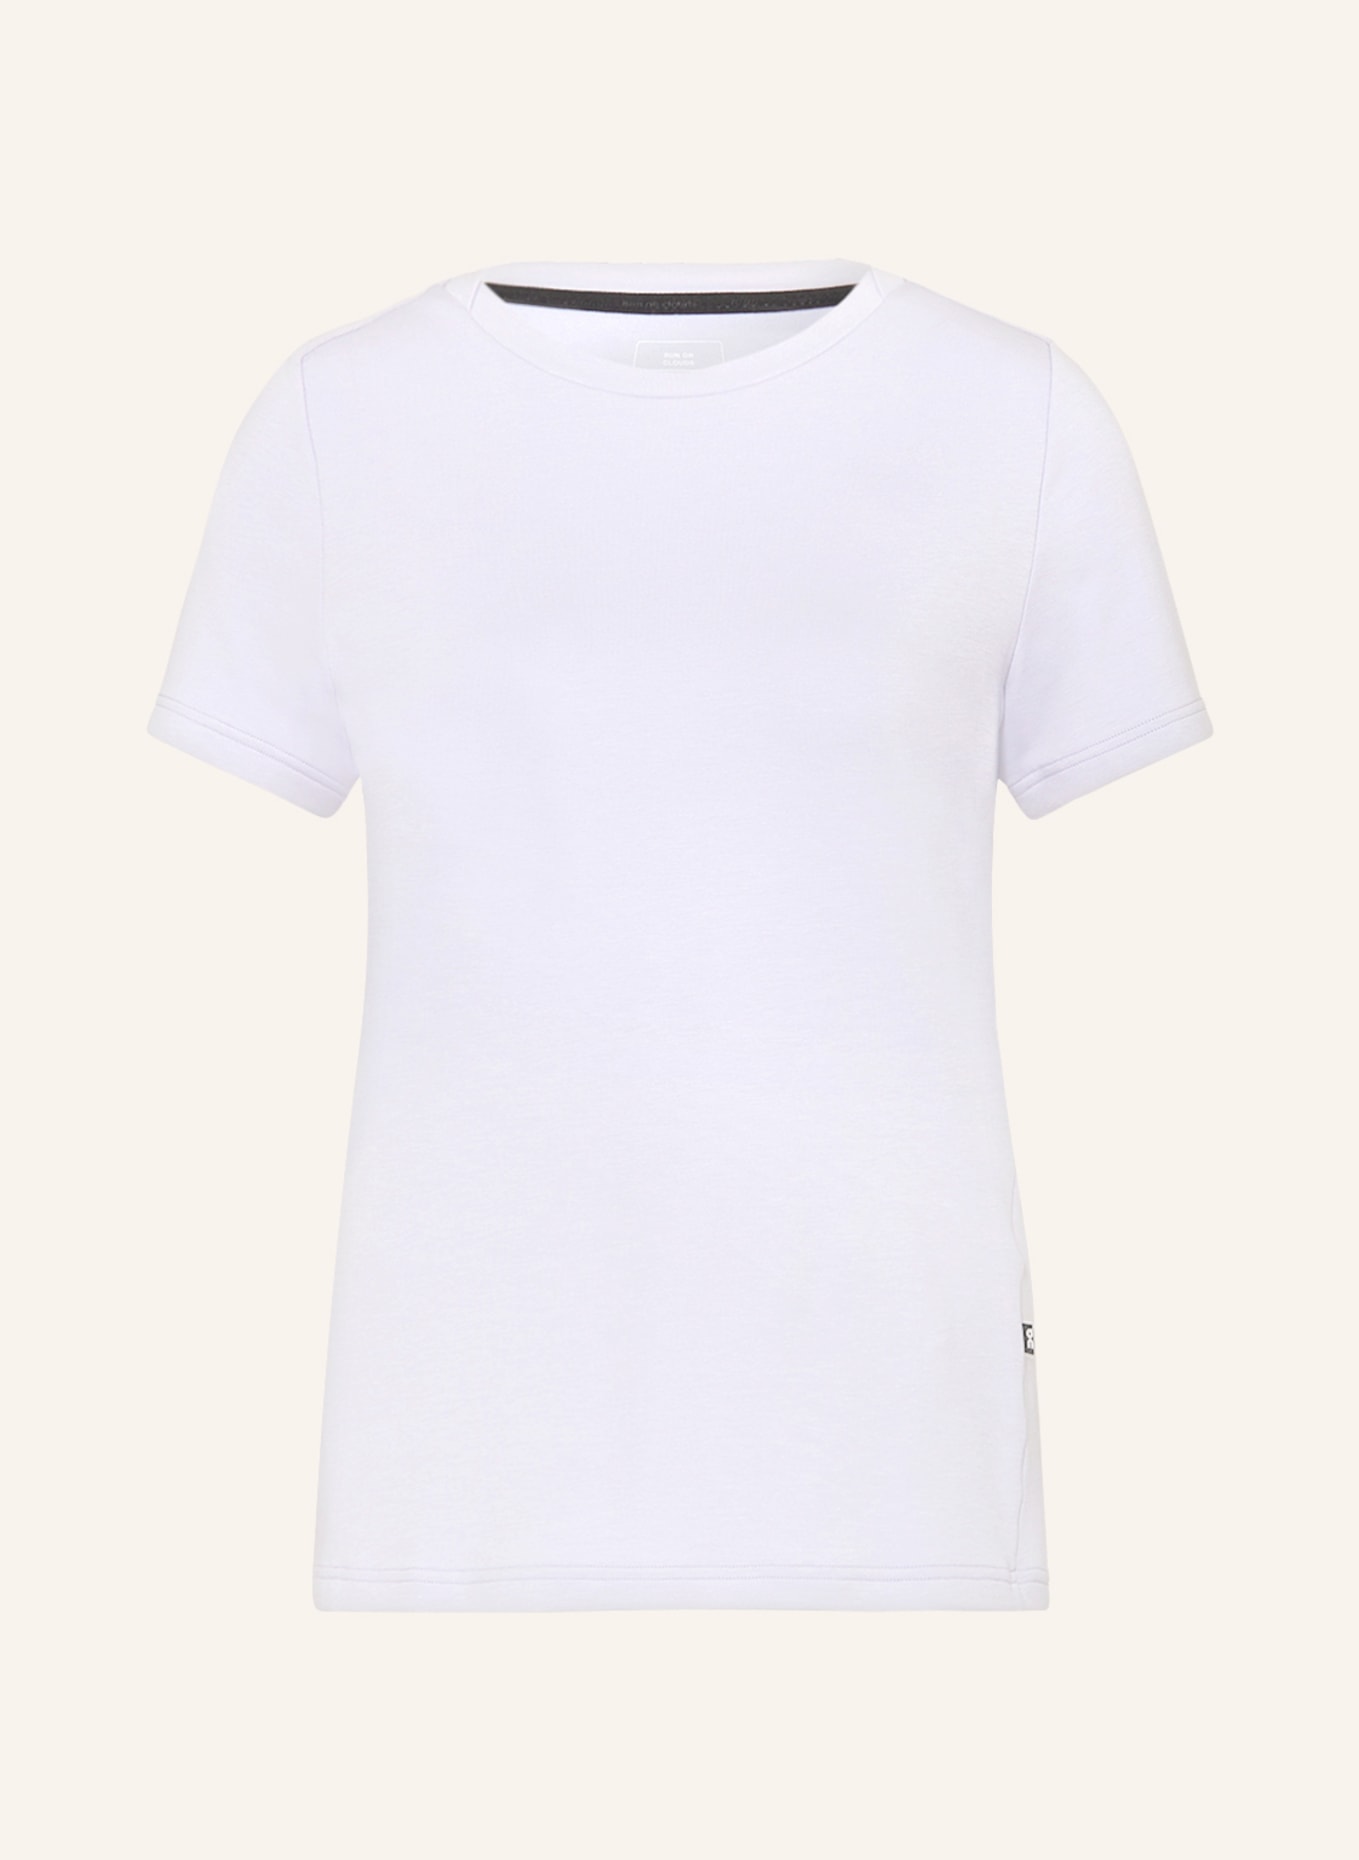 On T-shirt FOCUS LONG-T, Color: LIGHT PURPLE (Image 1)